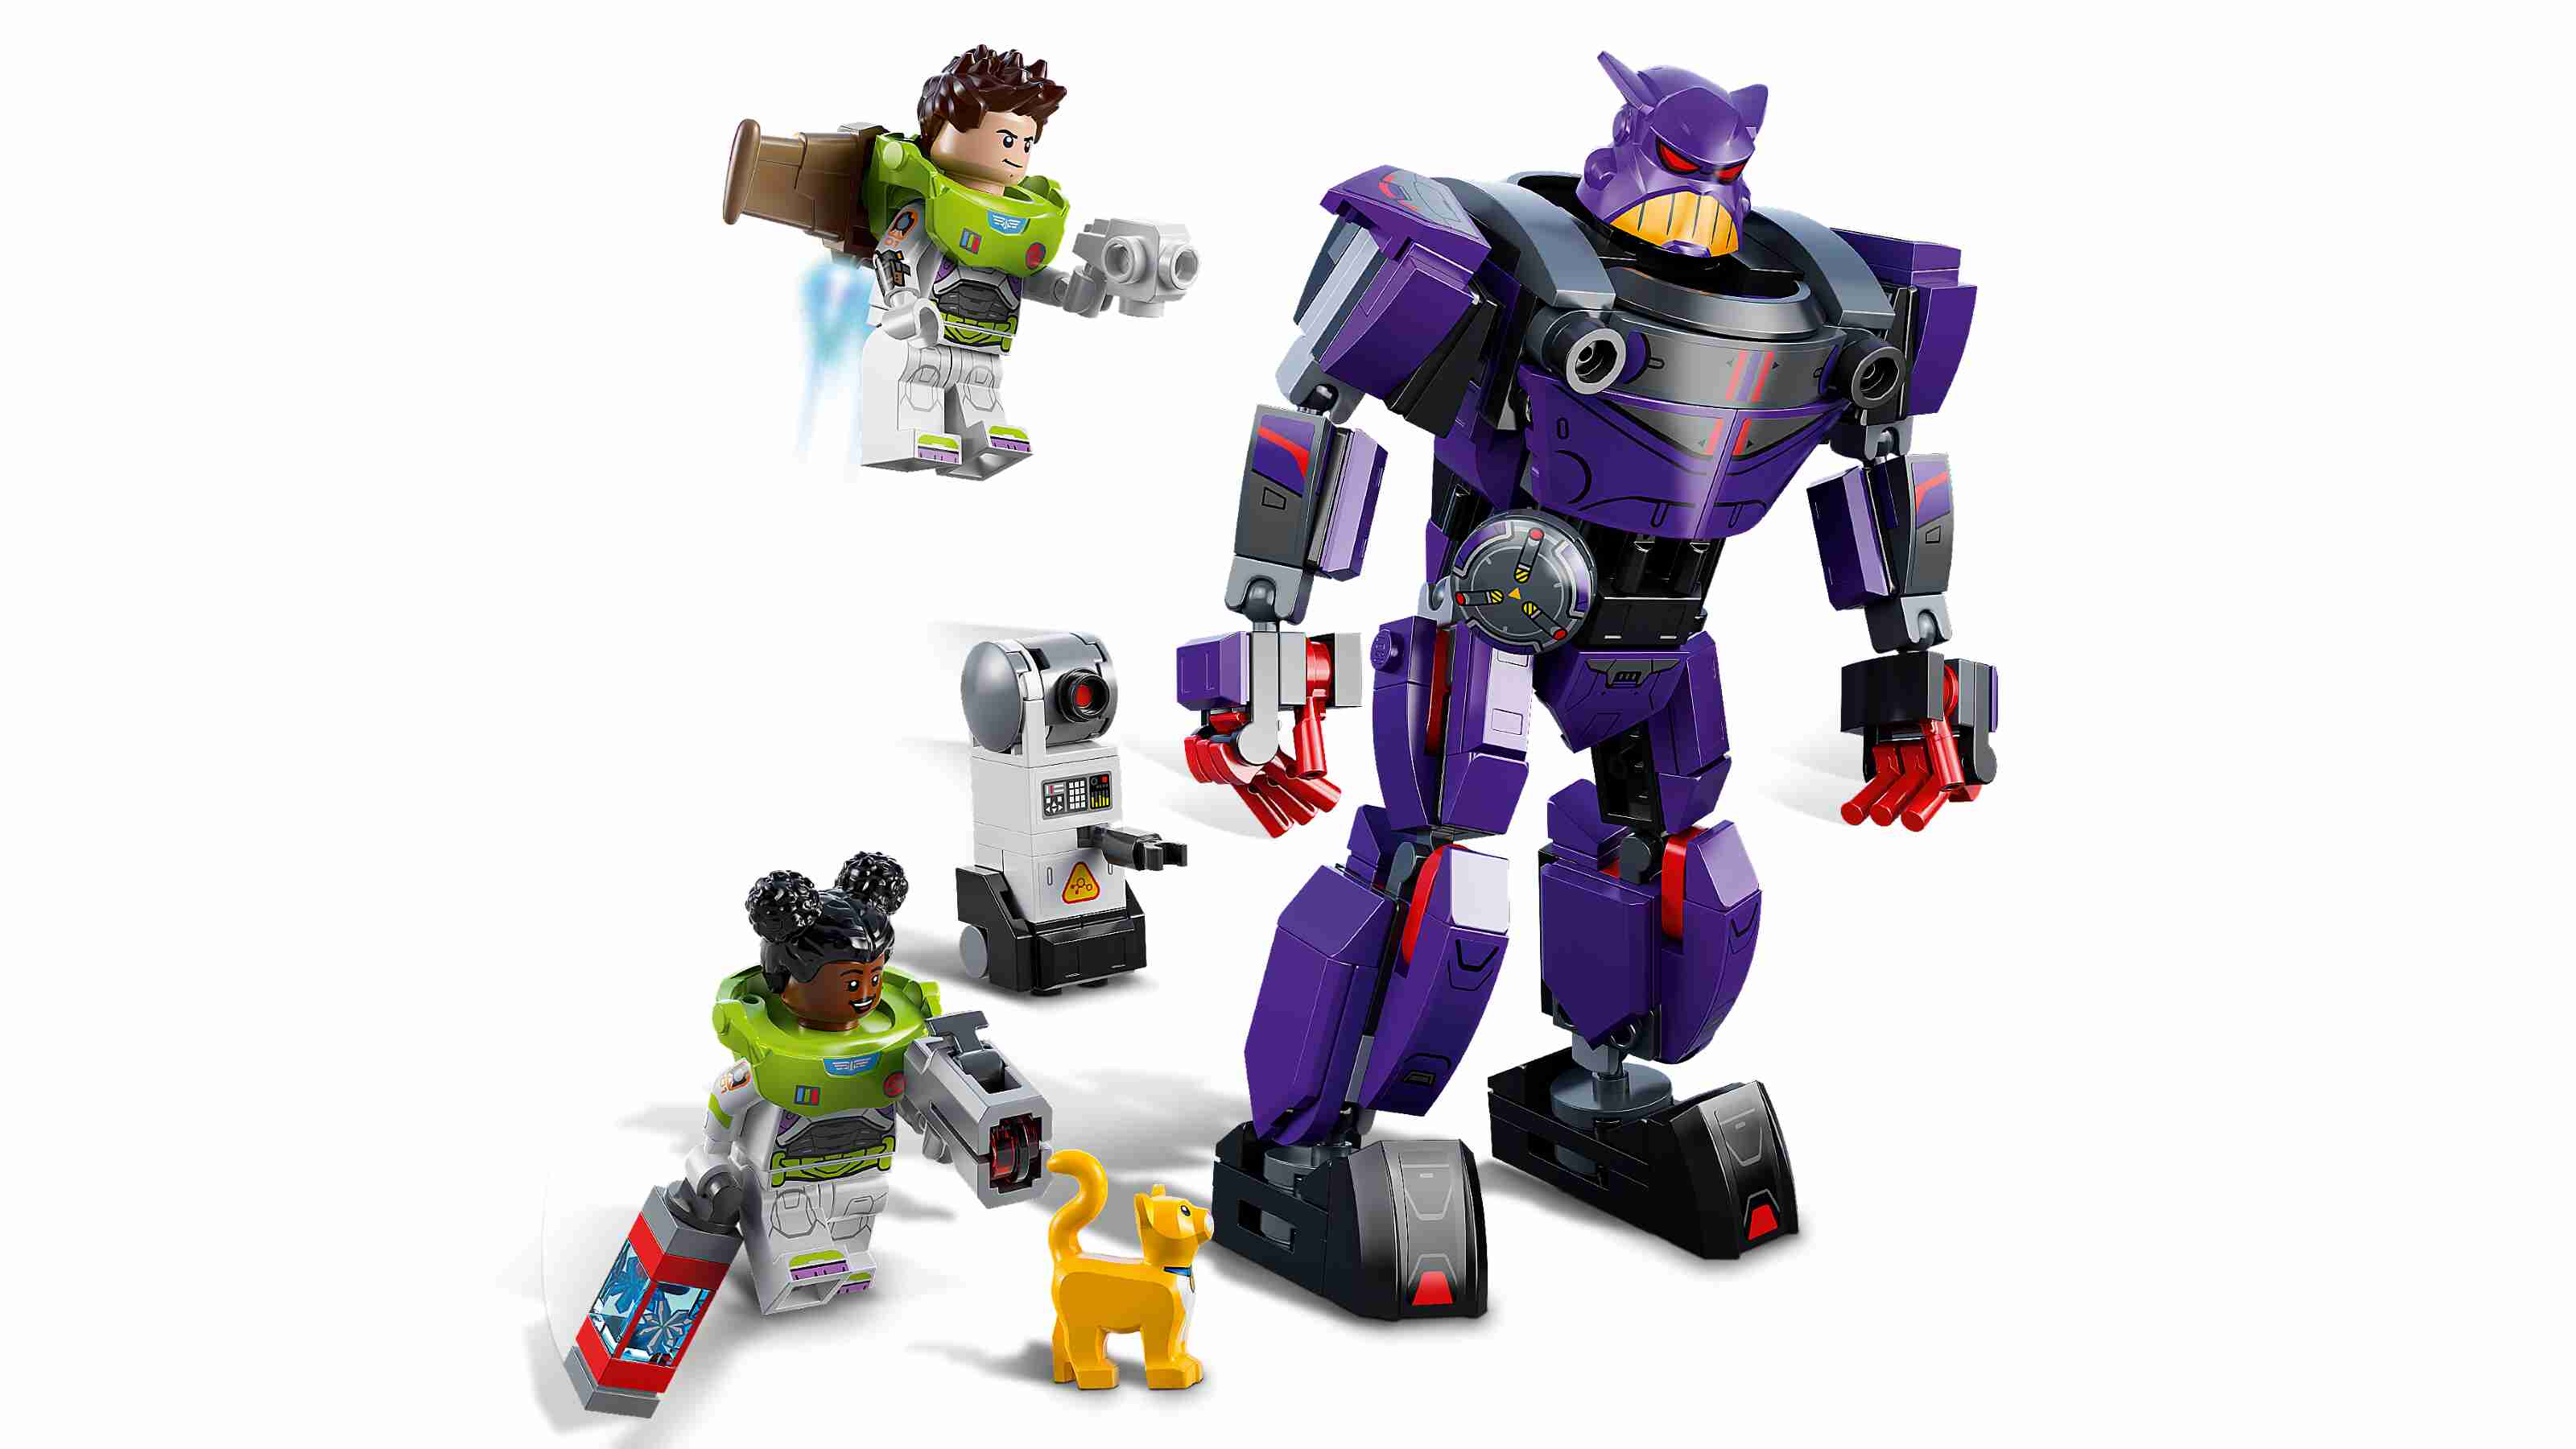 LEGO 76831 Disney and Pixar’s Lightyear Duell mit Zurg, Mech-Action-Figur u Buzz